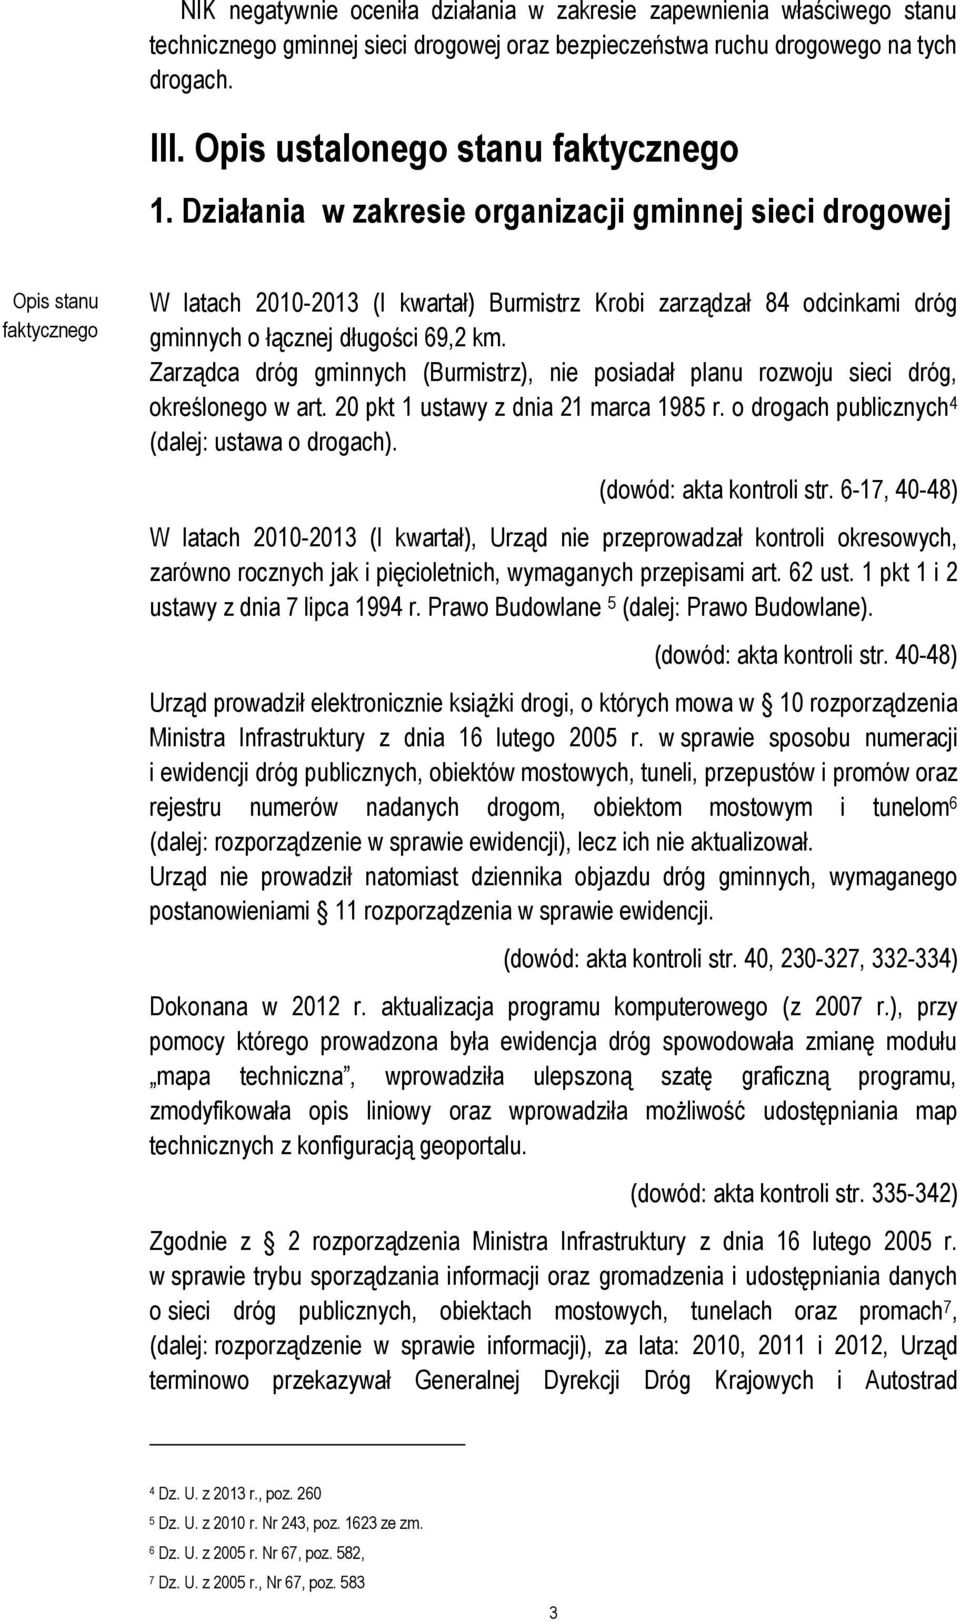 Działania w zakresie organizacji gminnej sieci drogowej Opis stanu faktycznego W latach 2010-2013 (I kwartał) Burmistrz Krobi zarządzał 84 odcinkami dróg gminnych o łącznej długości 69,2 km.